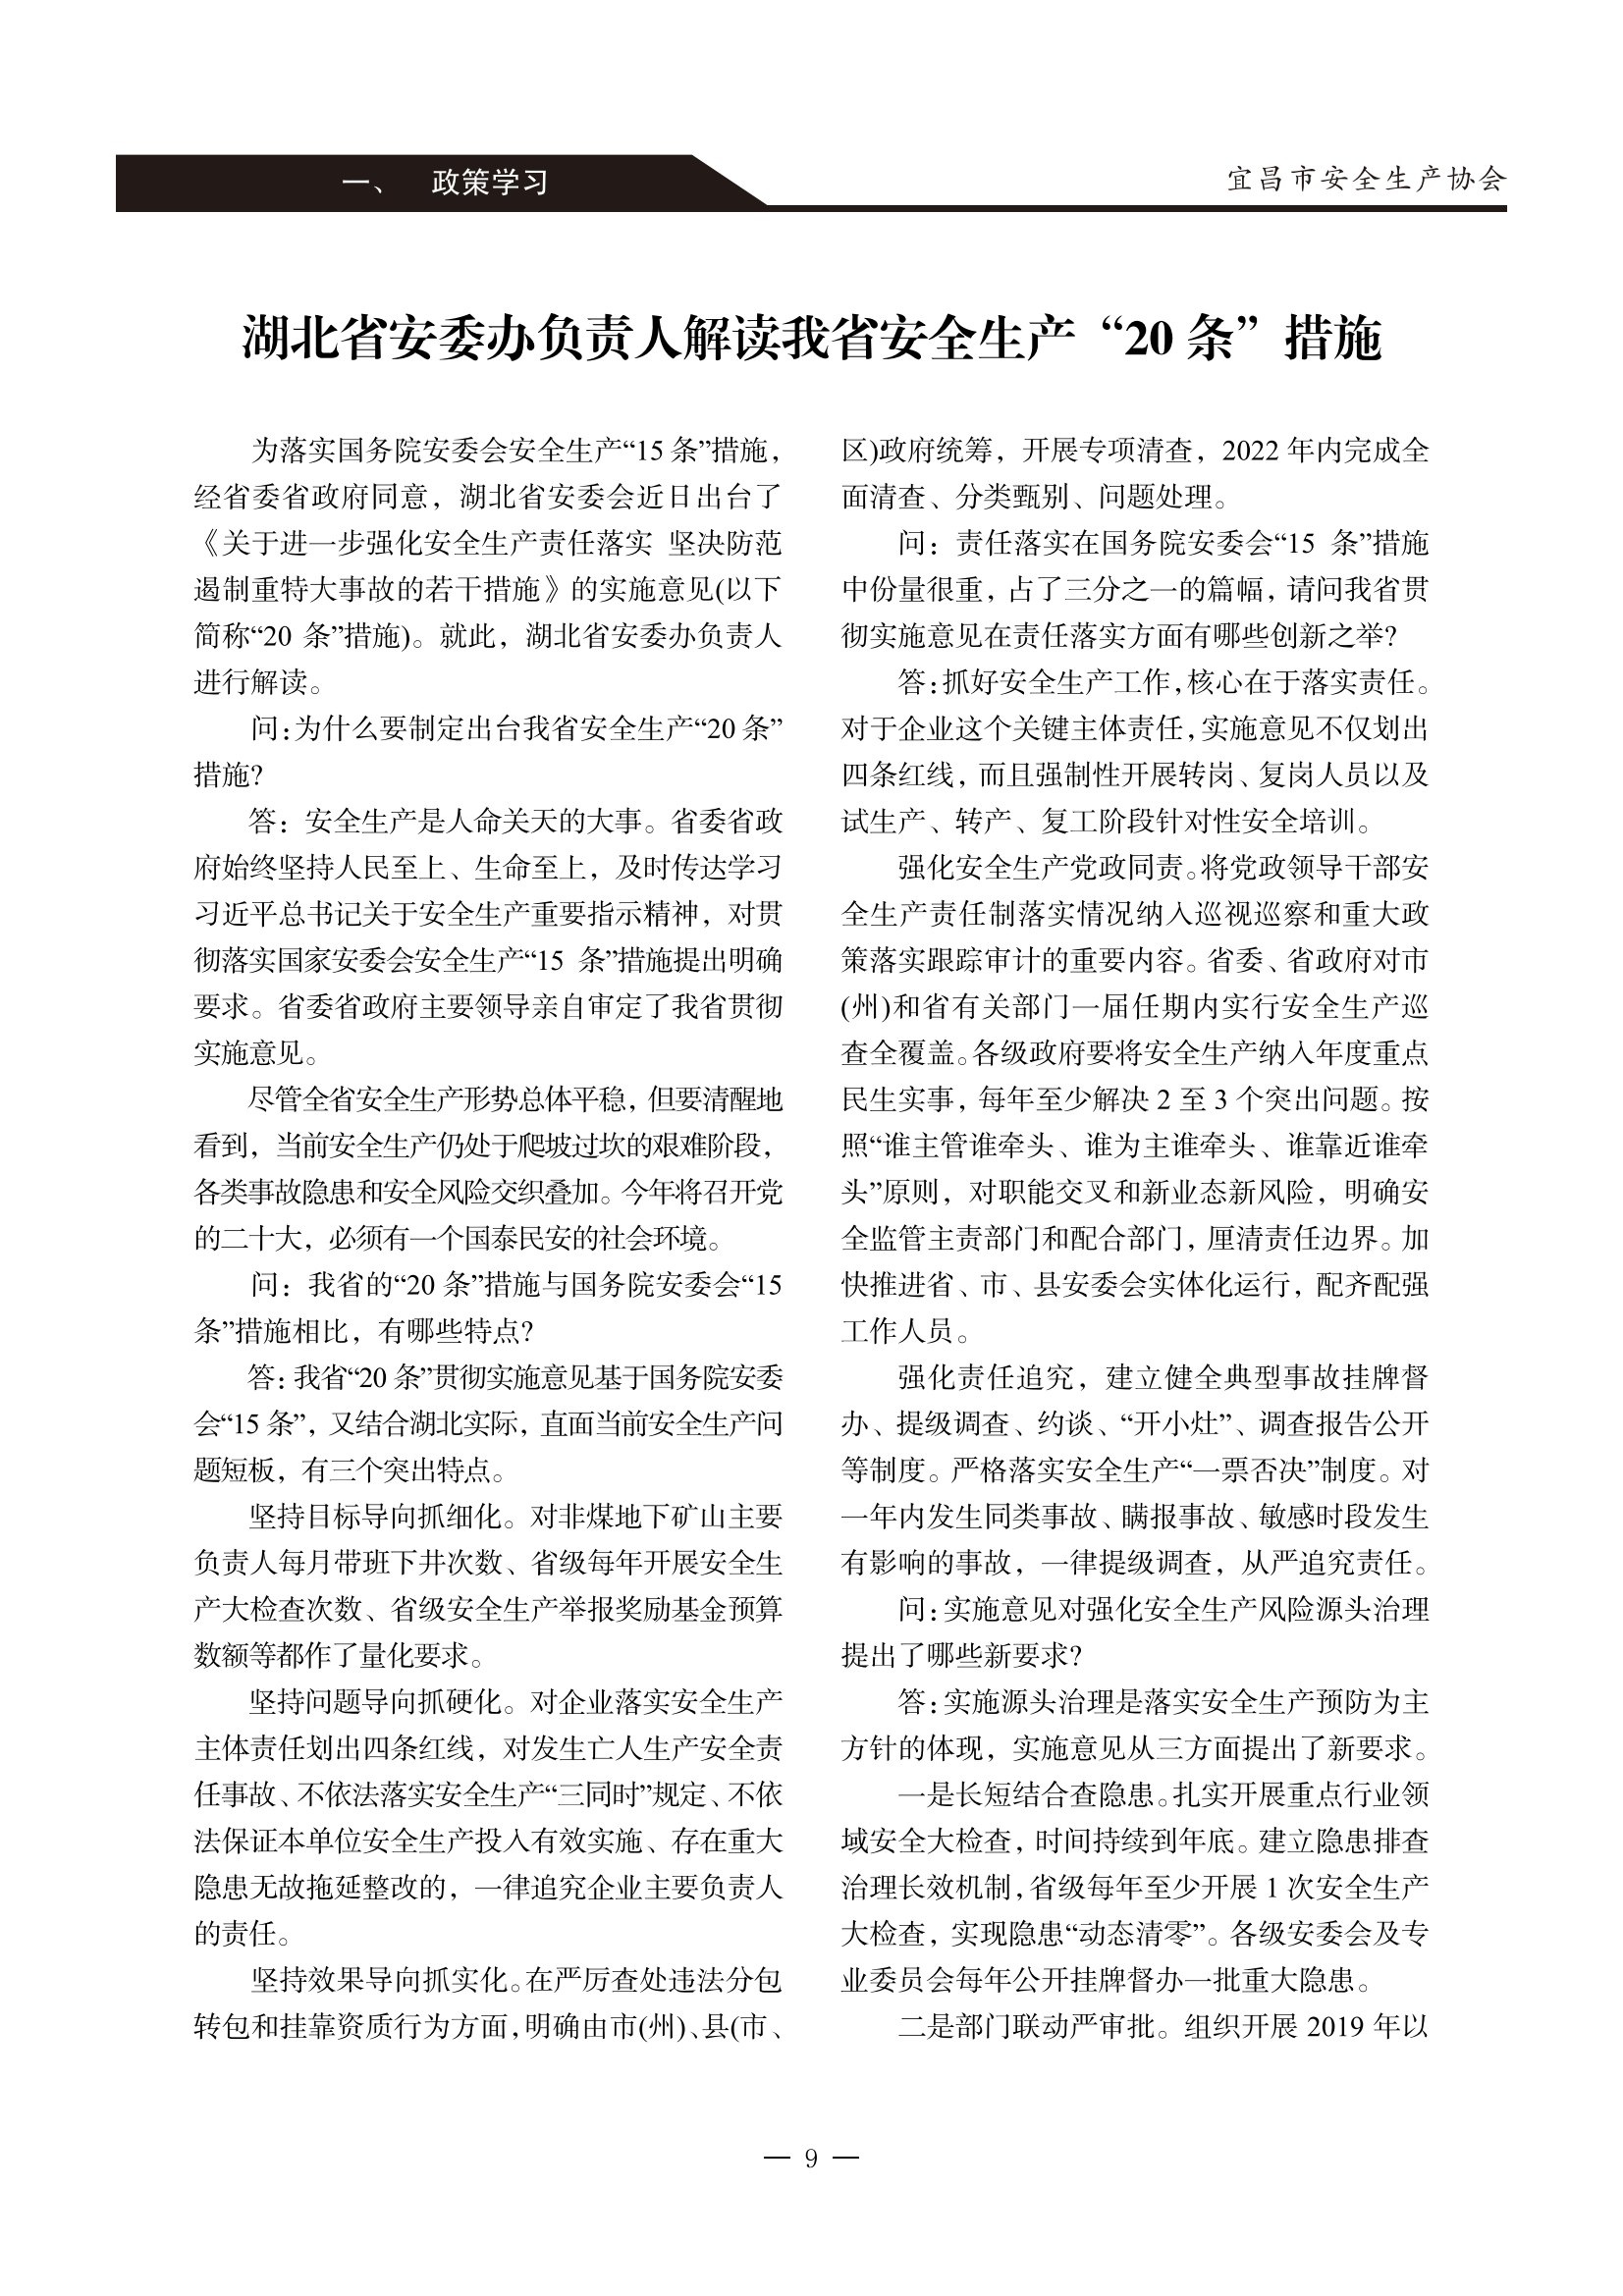 宜昌安全生产期刊第一期_14.png